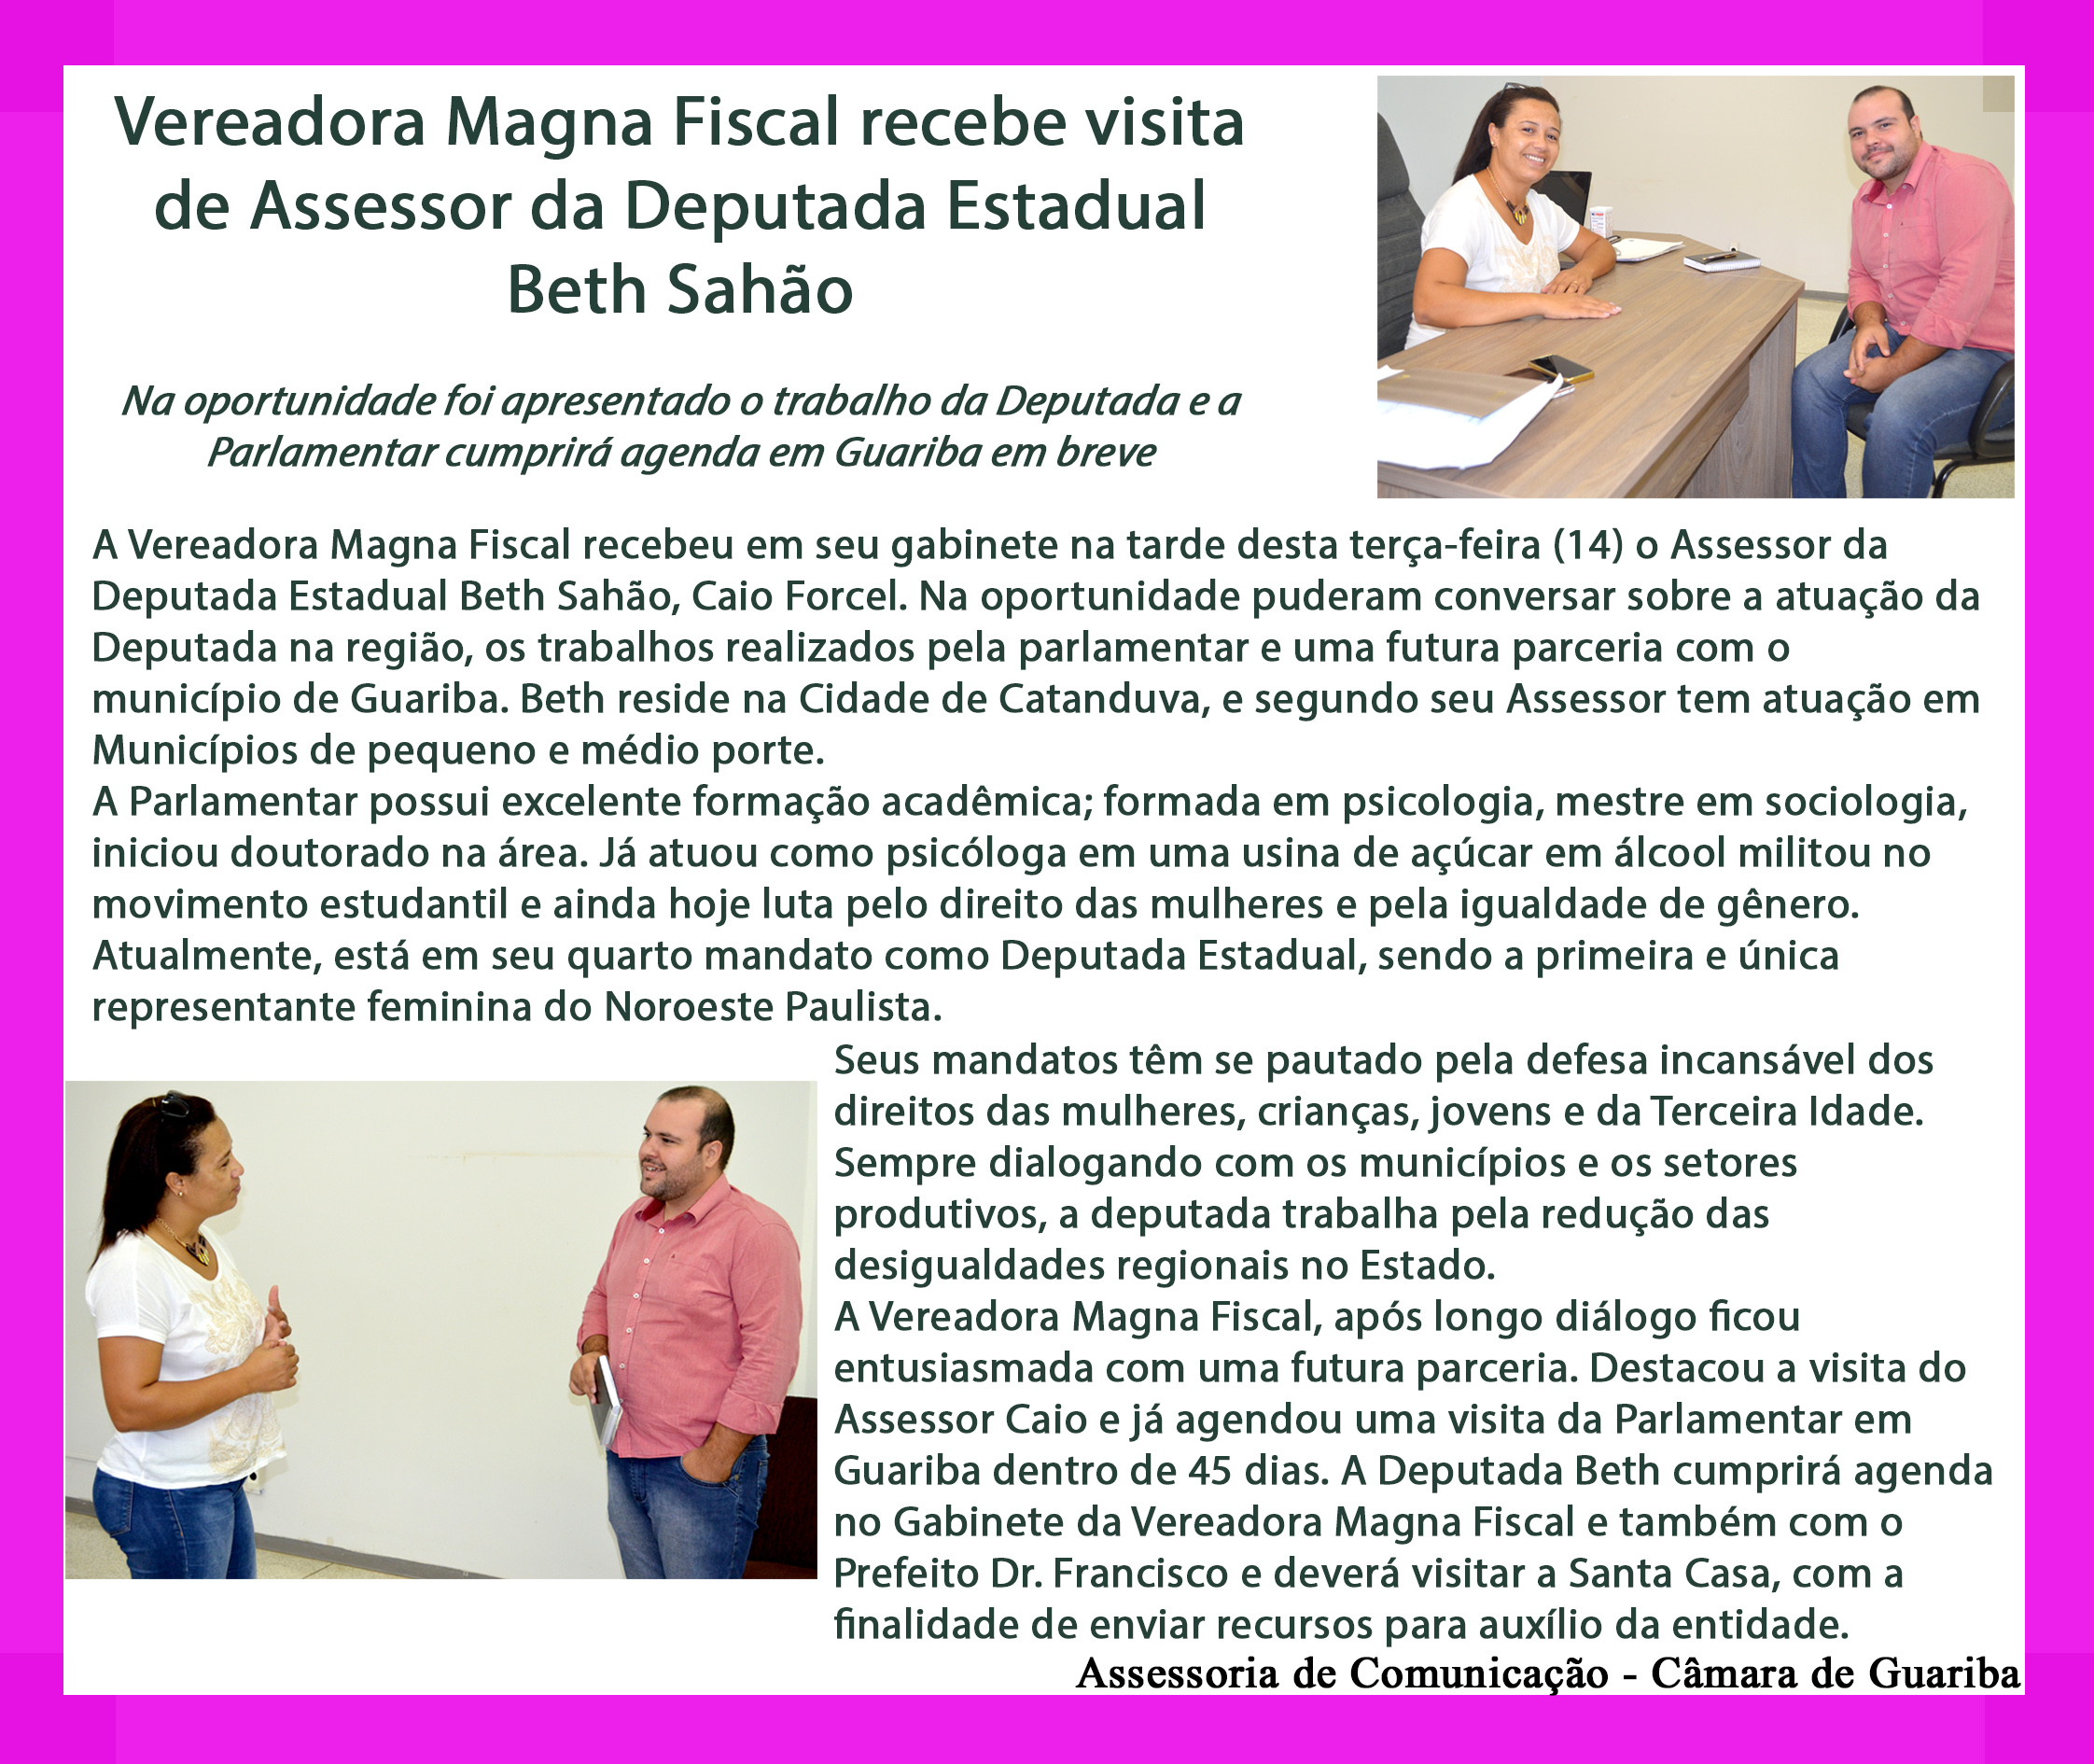 Vereador Magna Fiscal recebe assessor da Deputada Beth Sahão